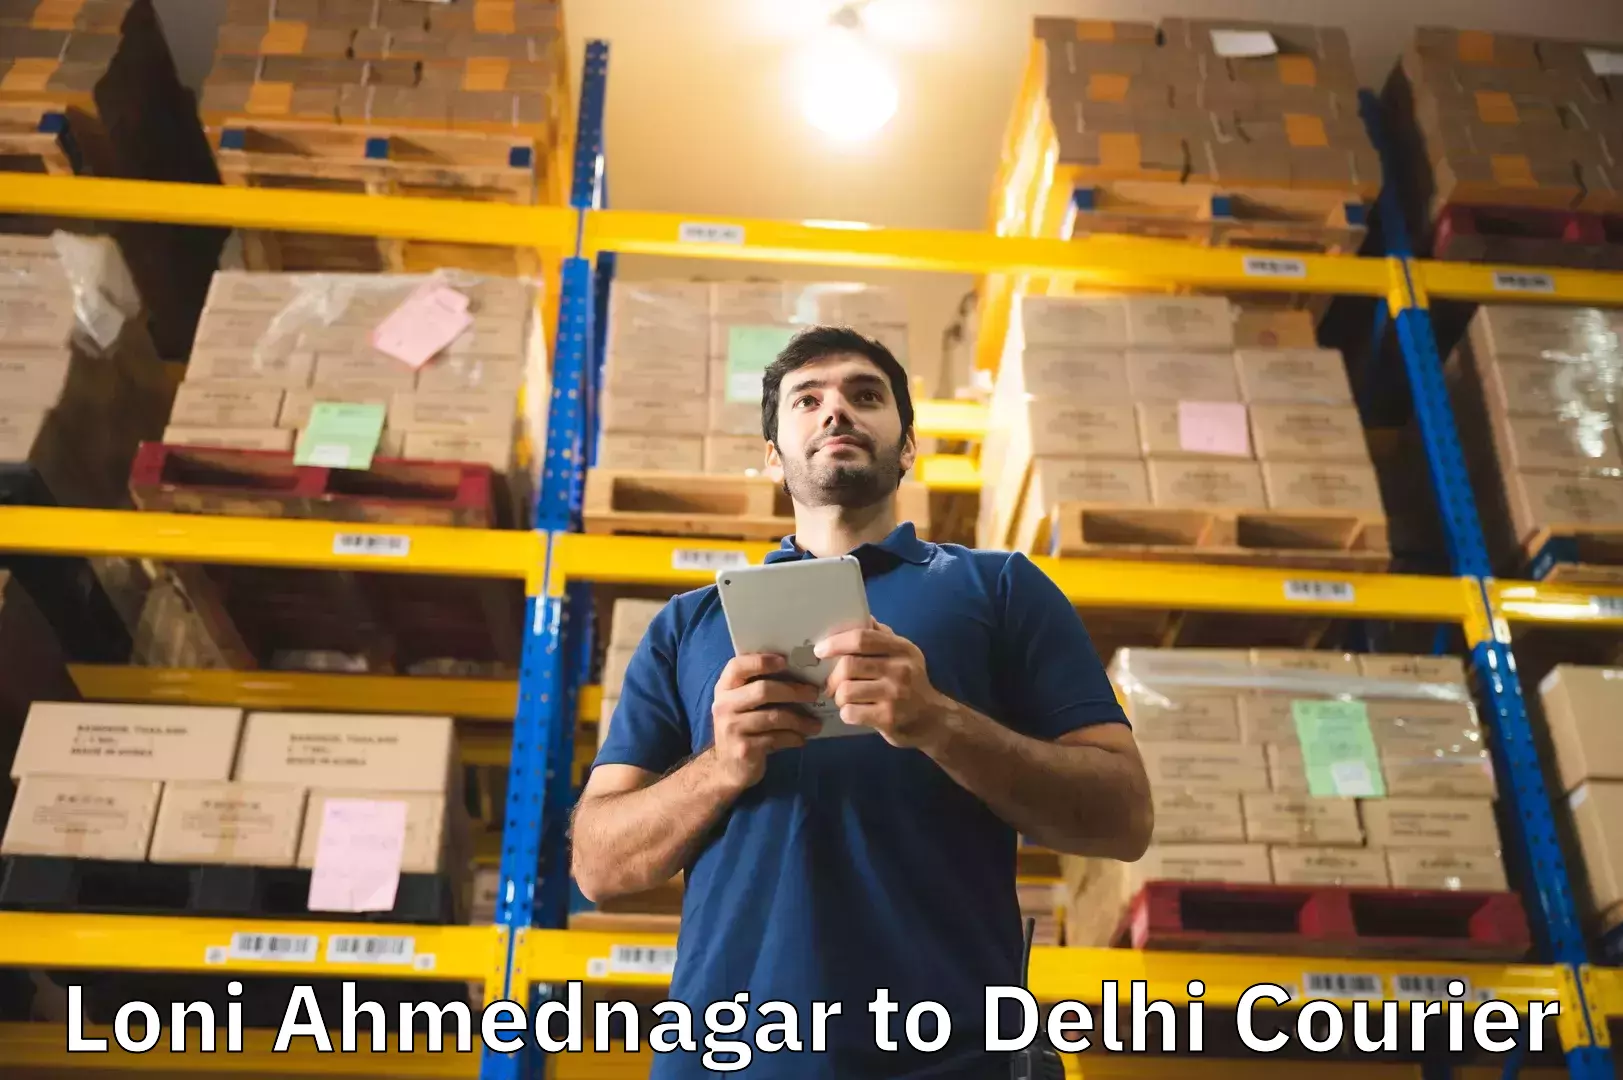 Digital baggage courier Loni Ahmednagar to NIT Delhi